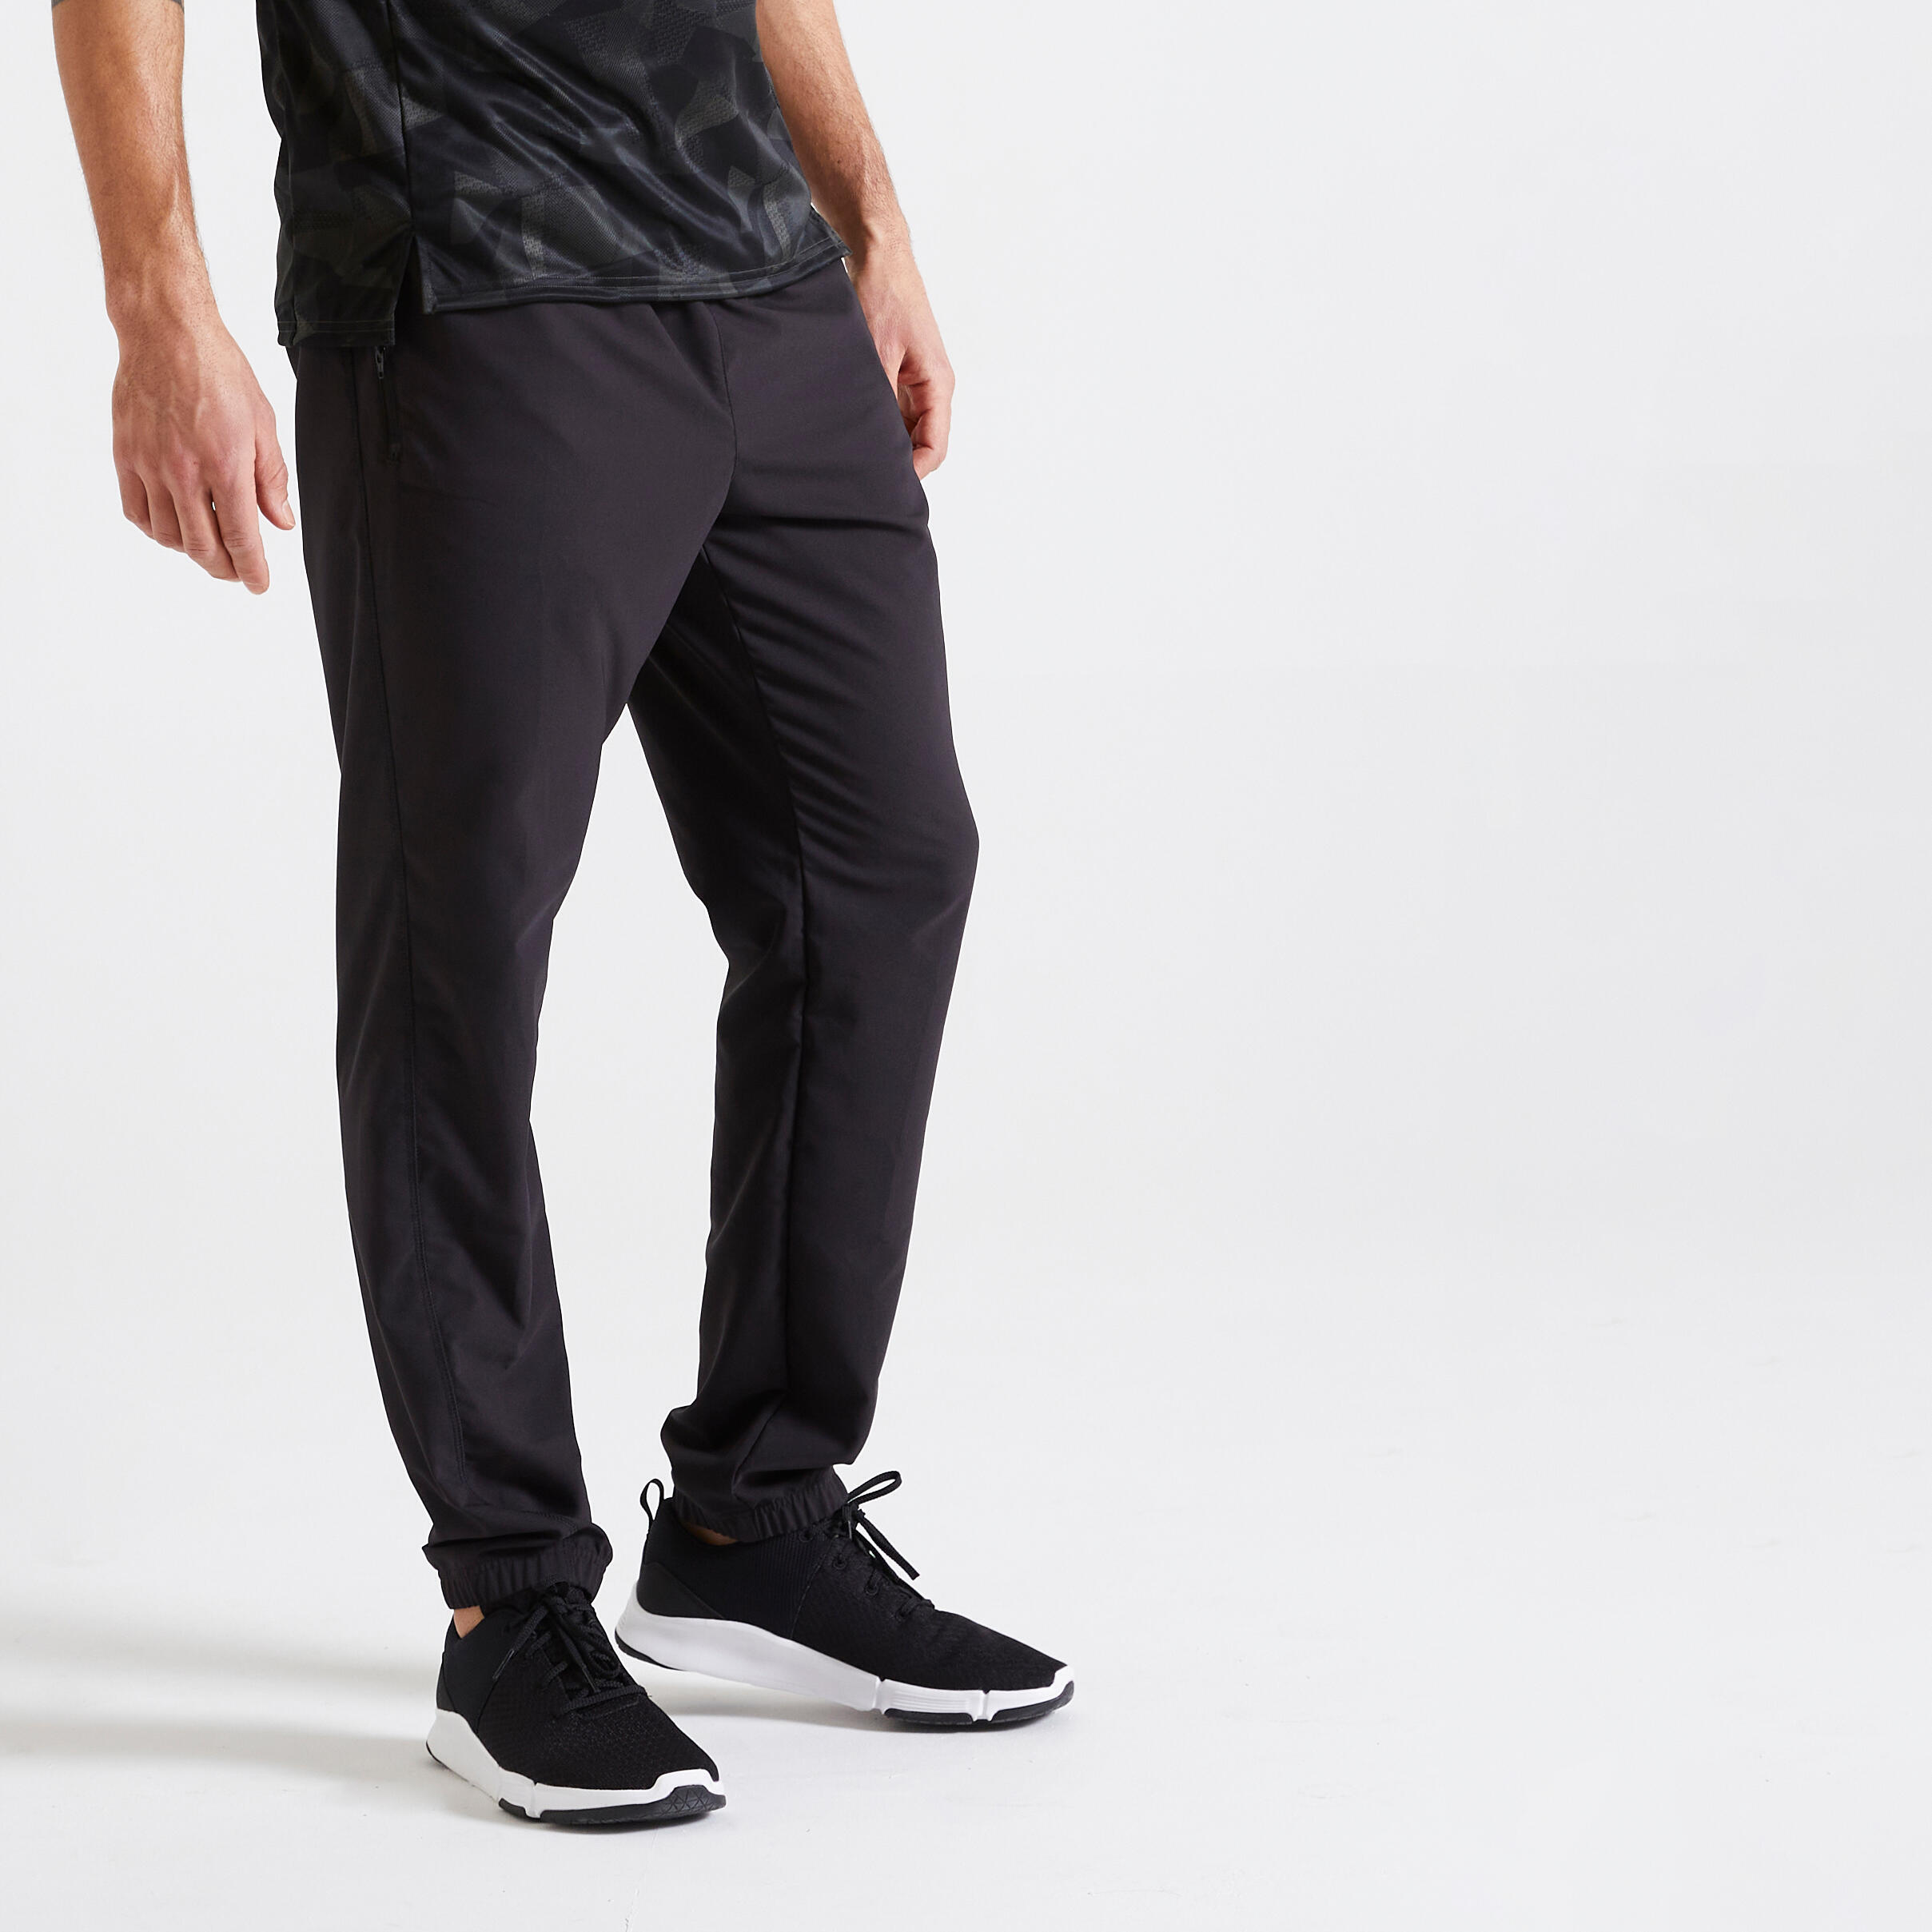 Тренировочные штаны для фитнеса дышащие мужские черные DOMYOS, черный